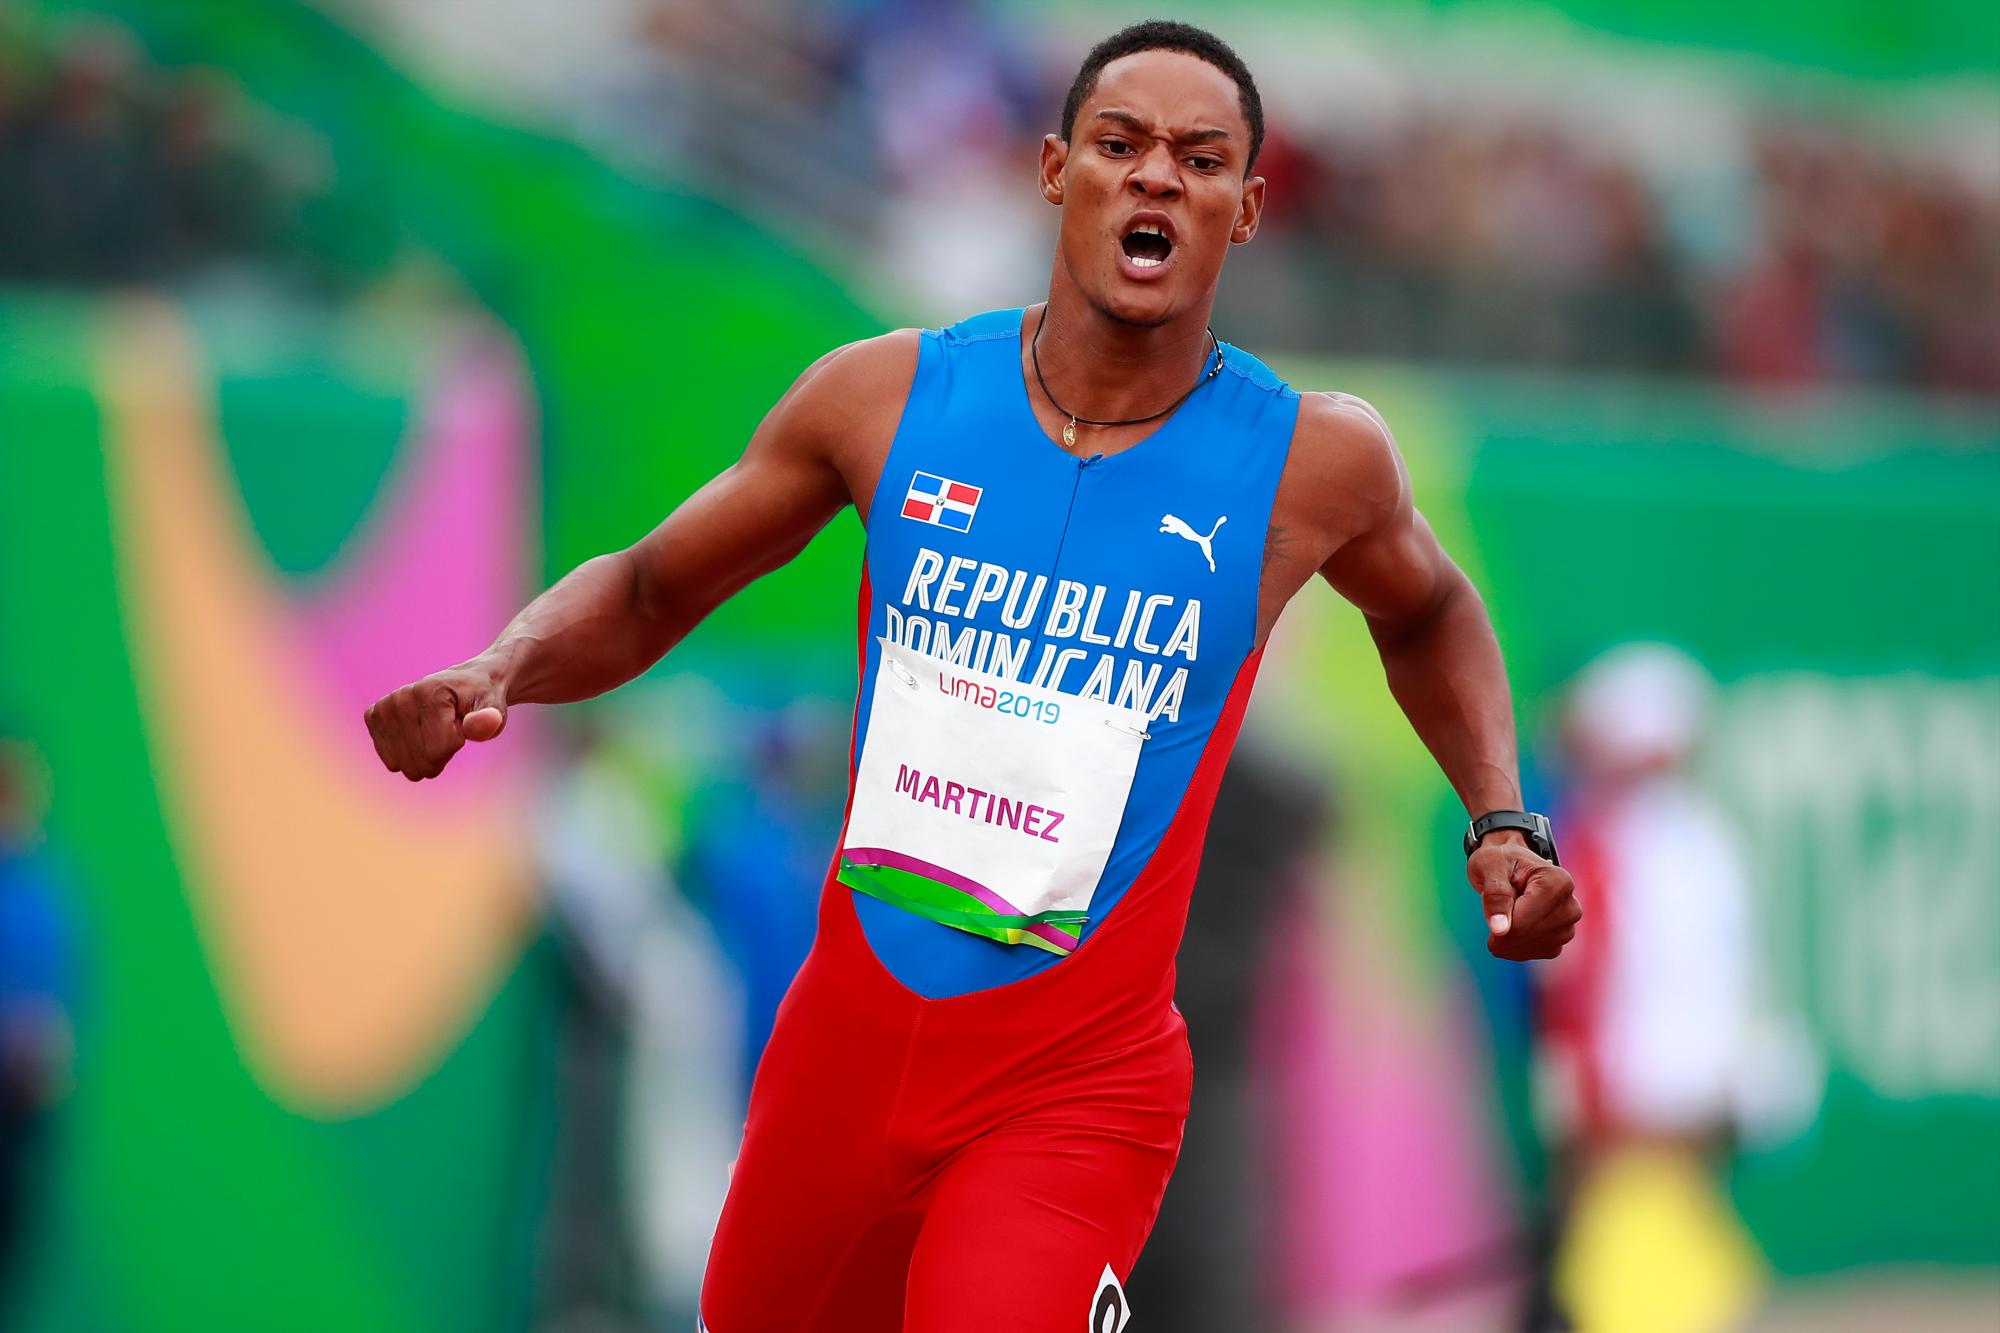 Yancarlos Martínez de República Dominicana después de correr en el H3 200m masculino en Atletismo en Villa Deportiva Nacional - VIDENA durante los Juegos Panamericanos Lima 2019.